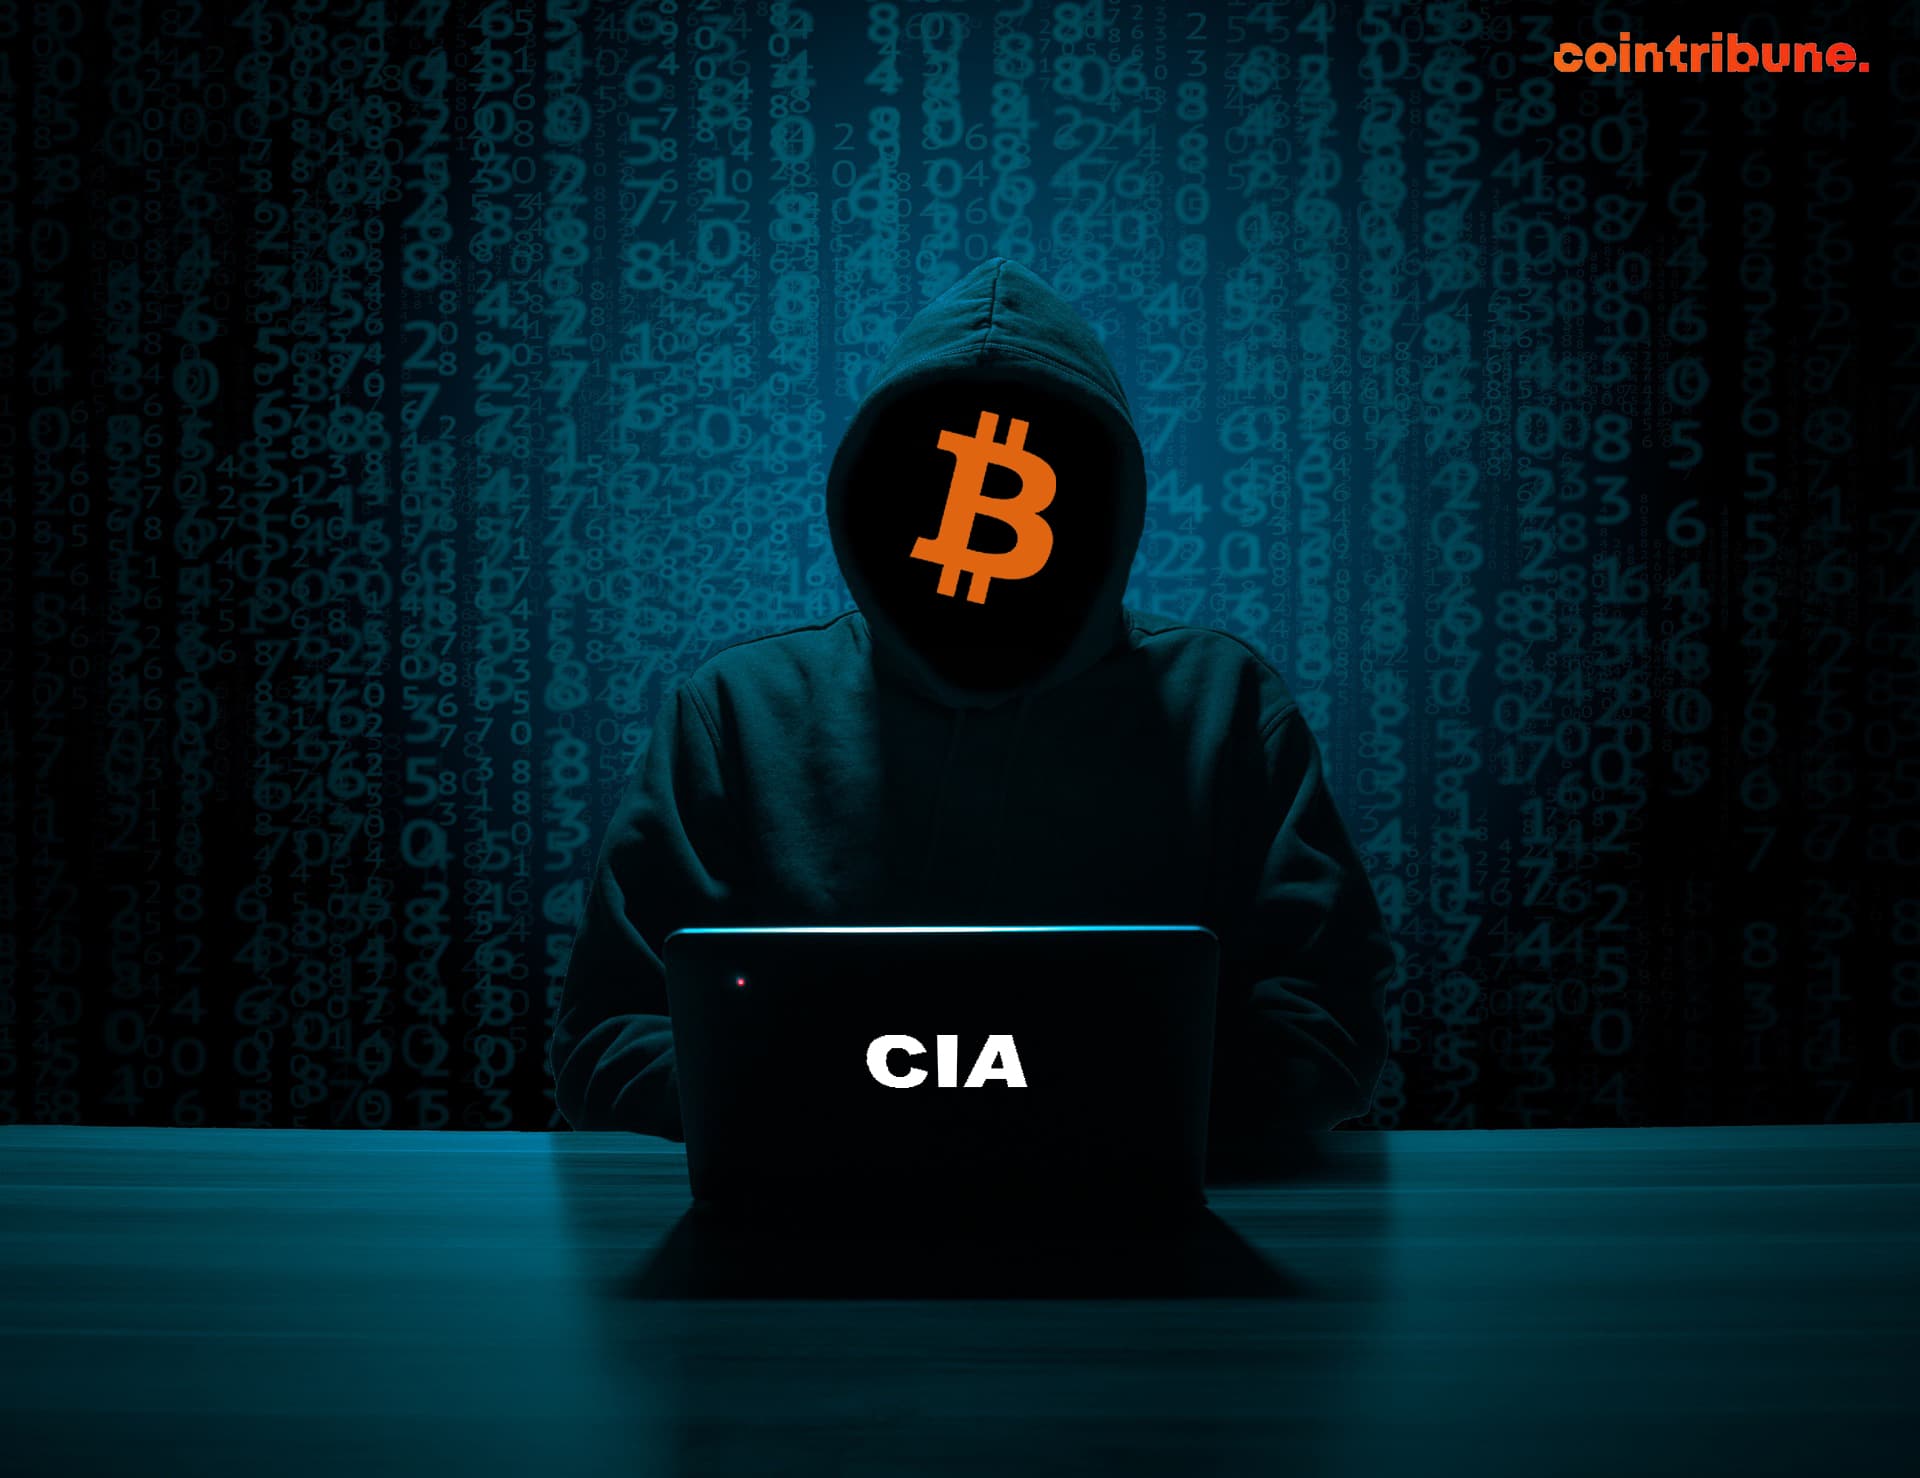 Une représentationd d'un agent de la CIA créant Bitcoin